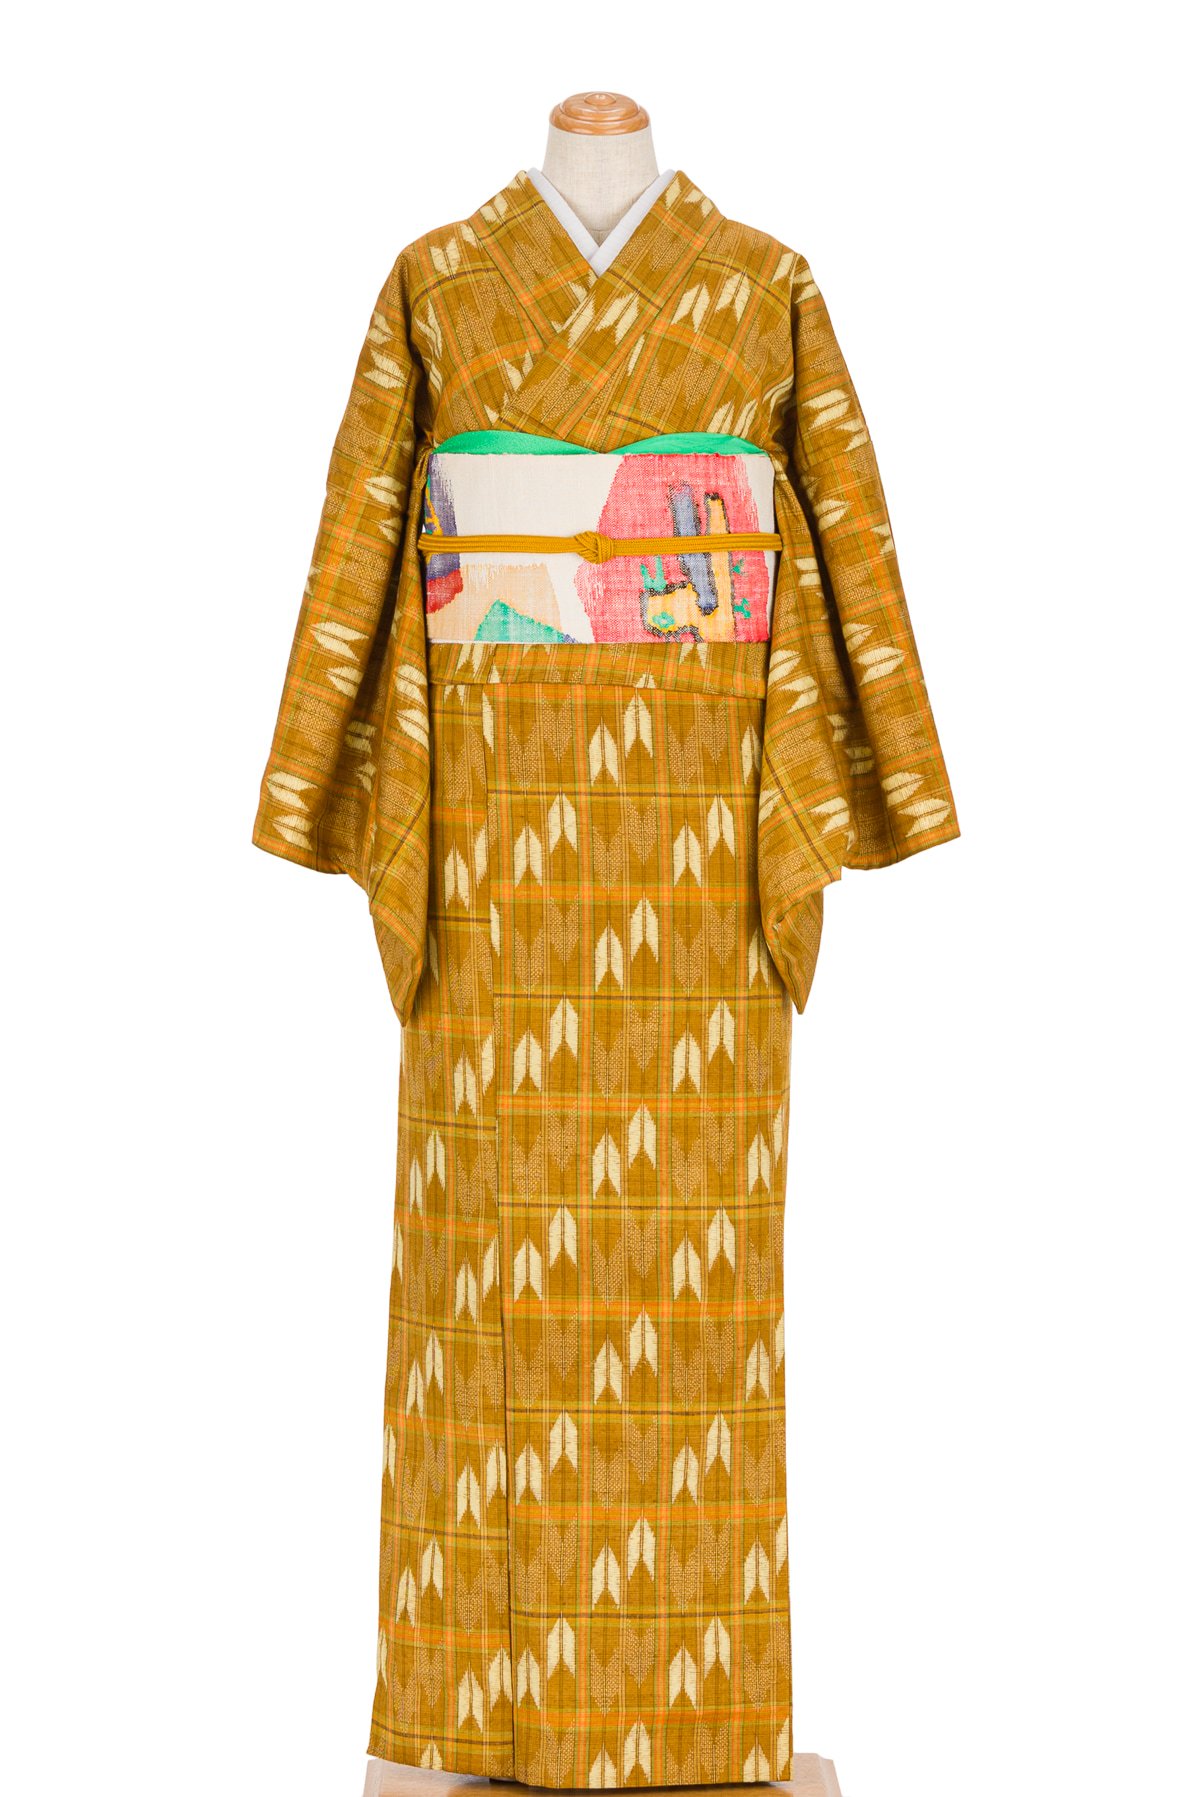 欲しいの 単衣 着物 紬 茶屋辻模様 黄海松茶色 広幅サイズ 正絹 着物 